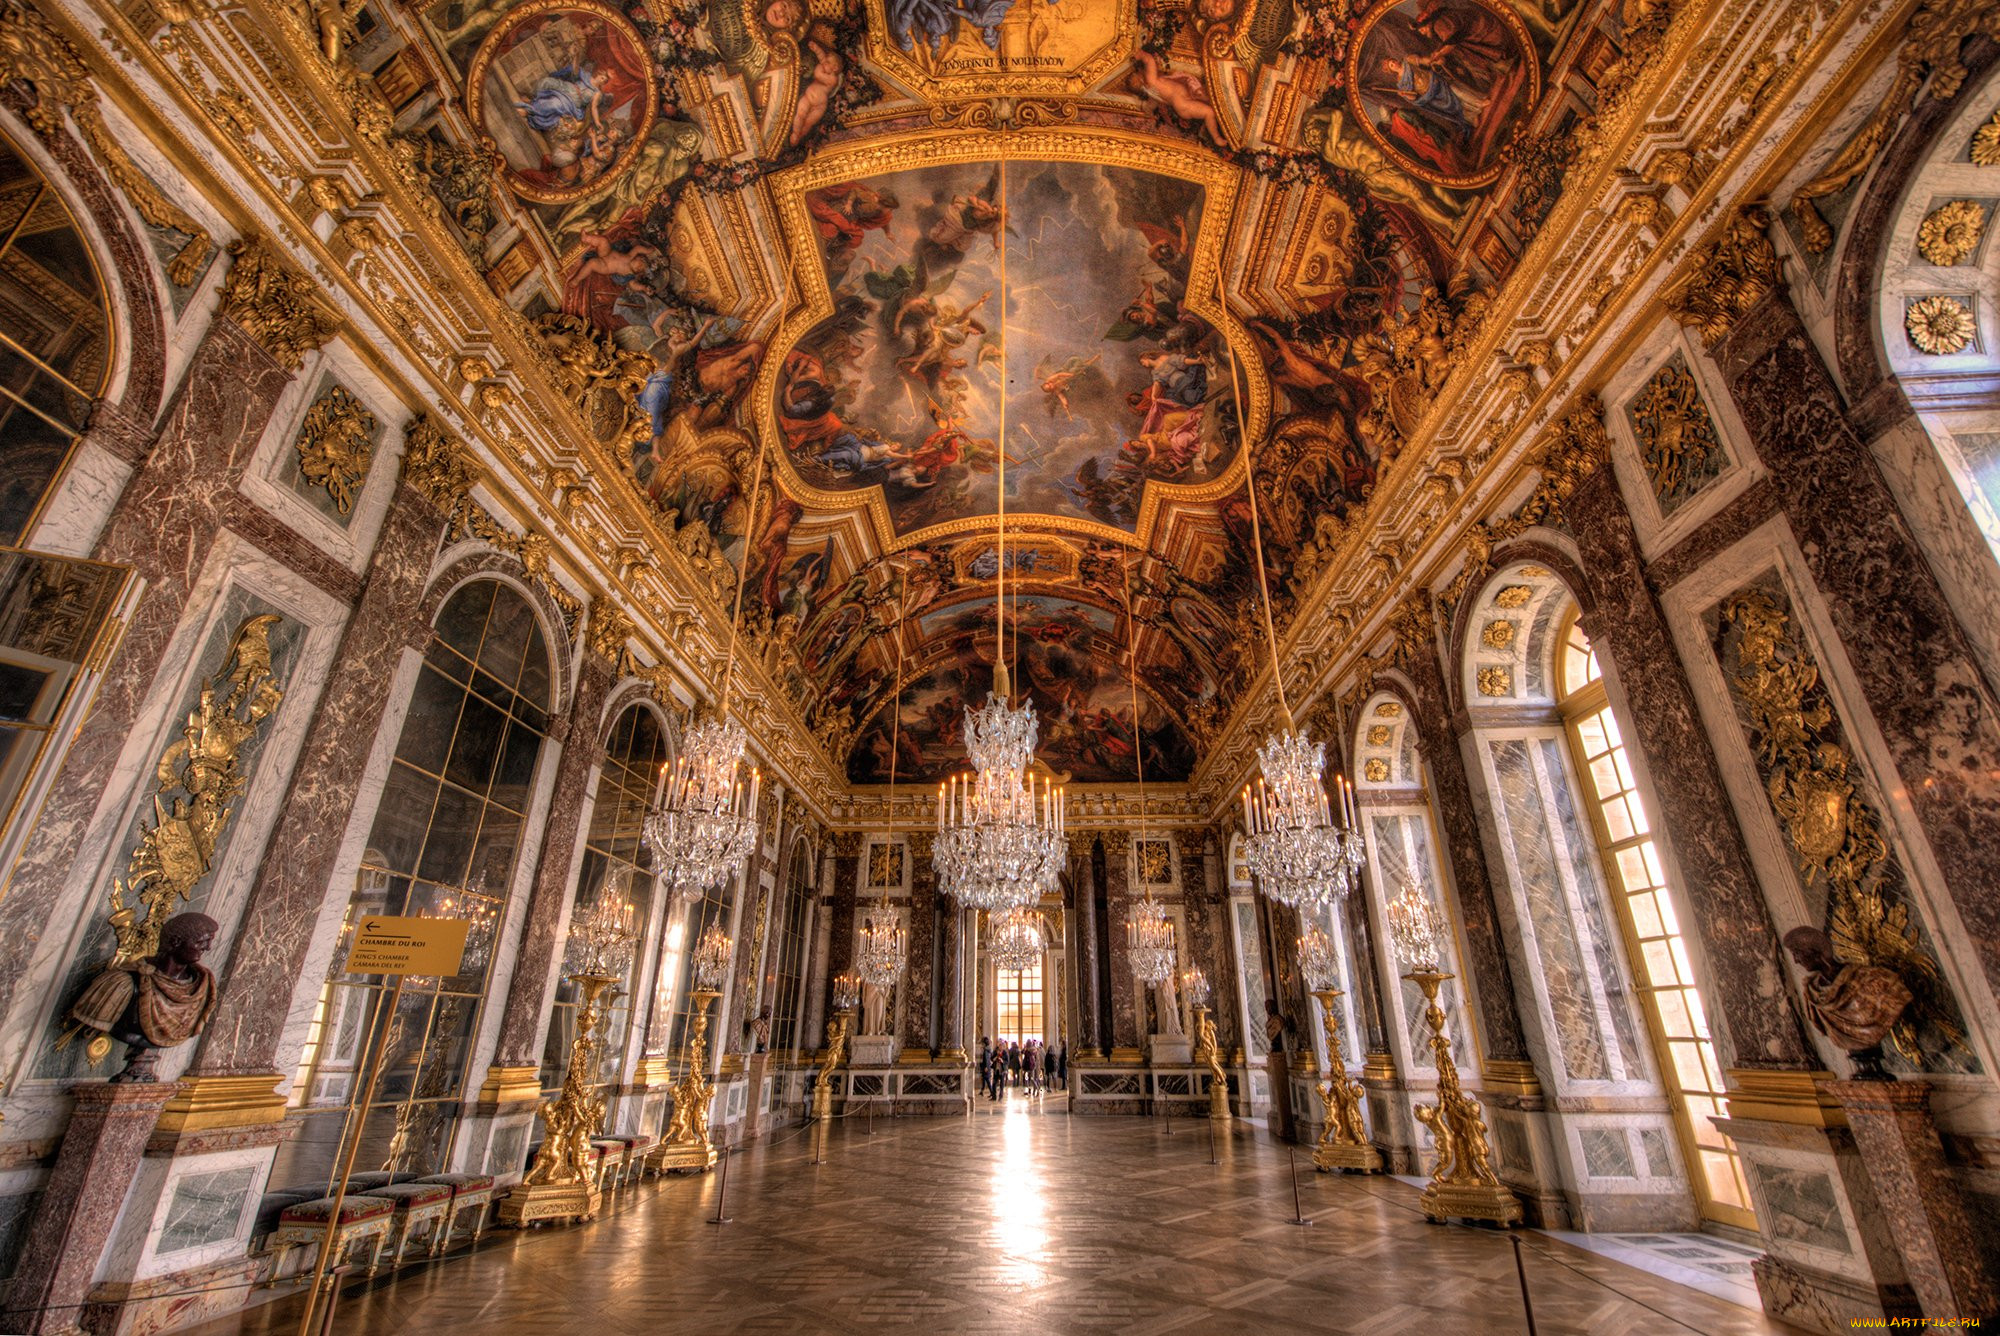 Chateau de versailles. Франция Барокко Версальский дворец. Версальский дворец, Версаль дворец Версаля. Зеркальная галерея Версальского дворца. Барокко интерьеры Версальского дворца.